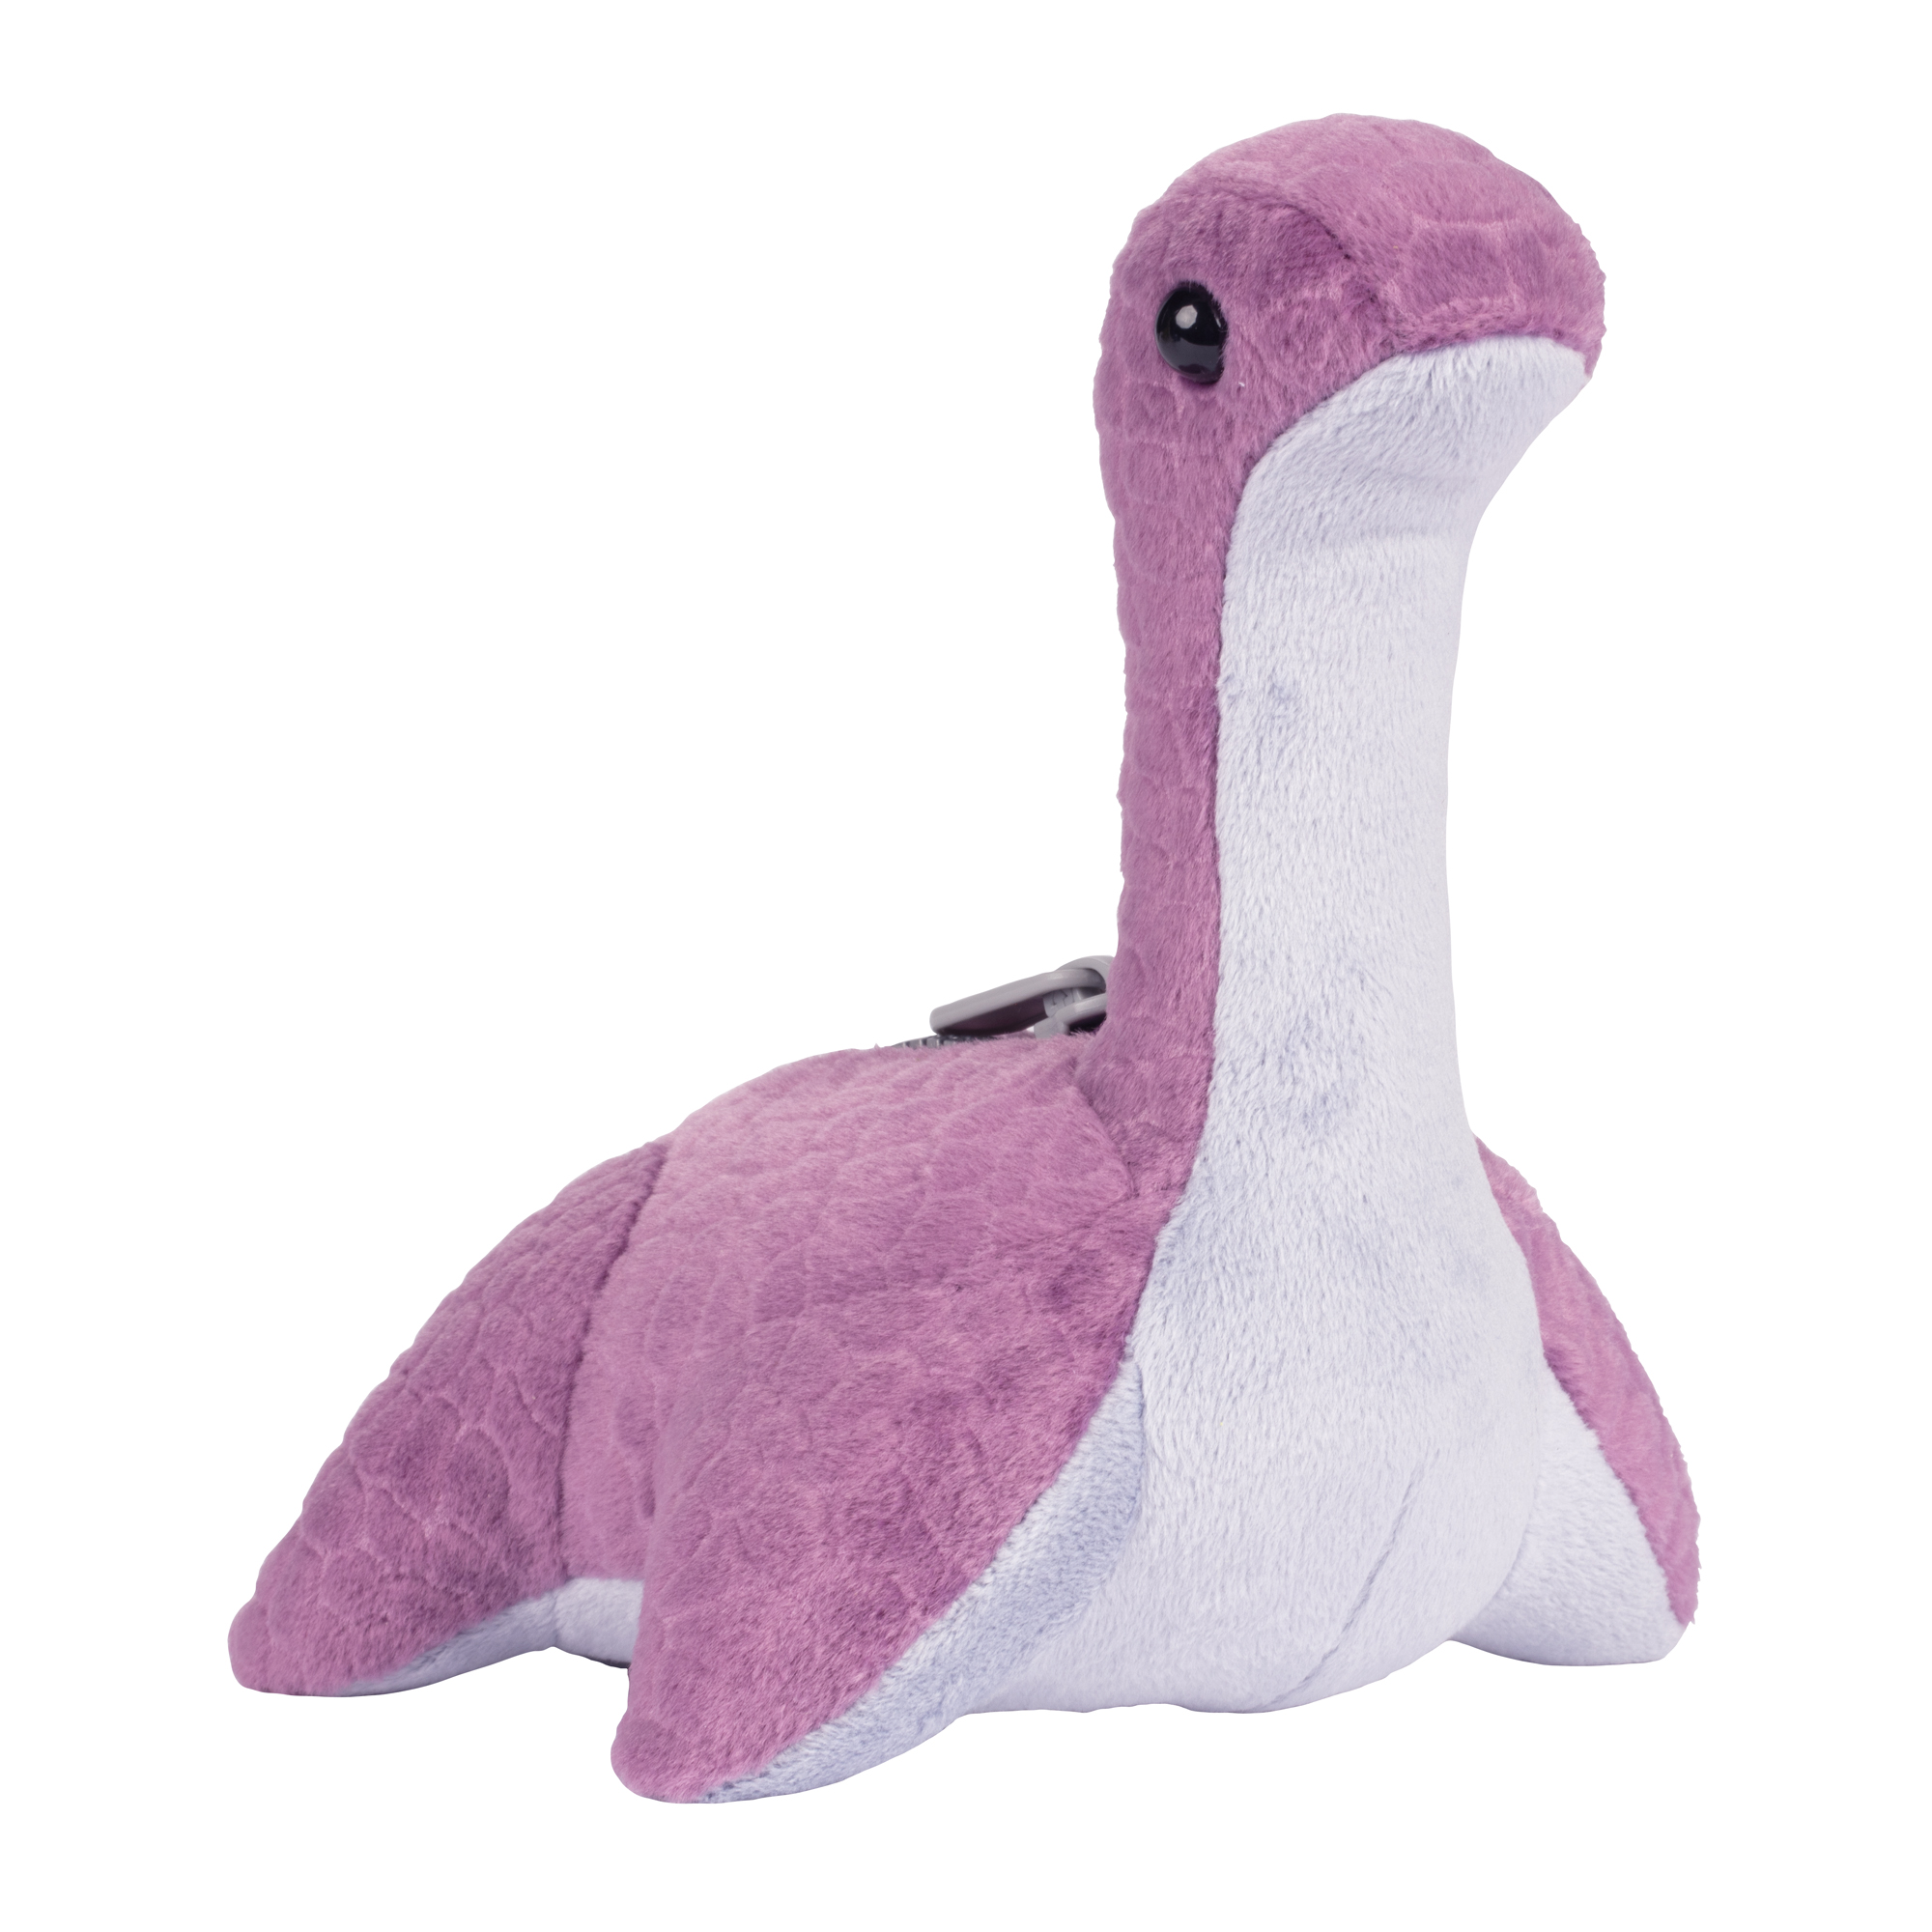 Apex Legends: Purple Nessie 6" Plush